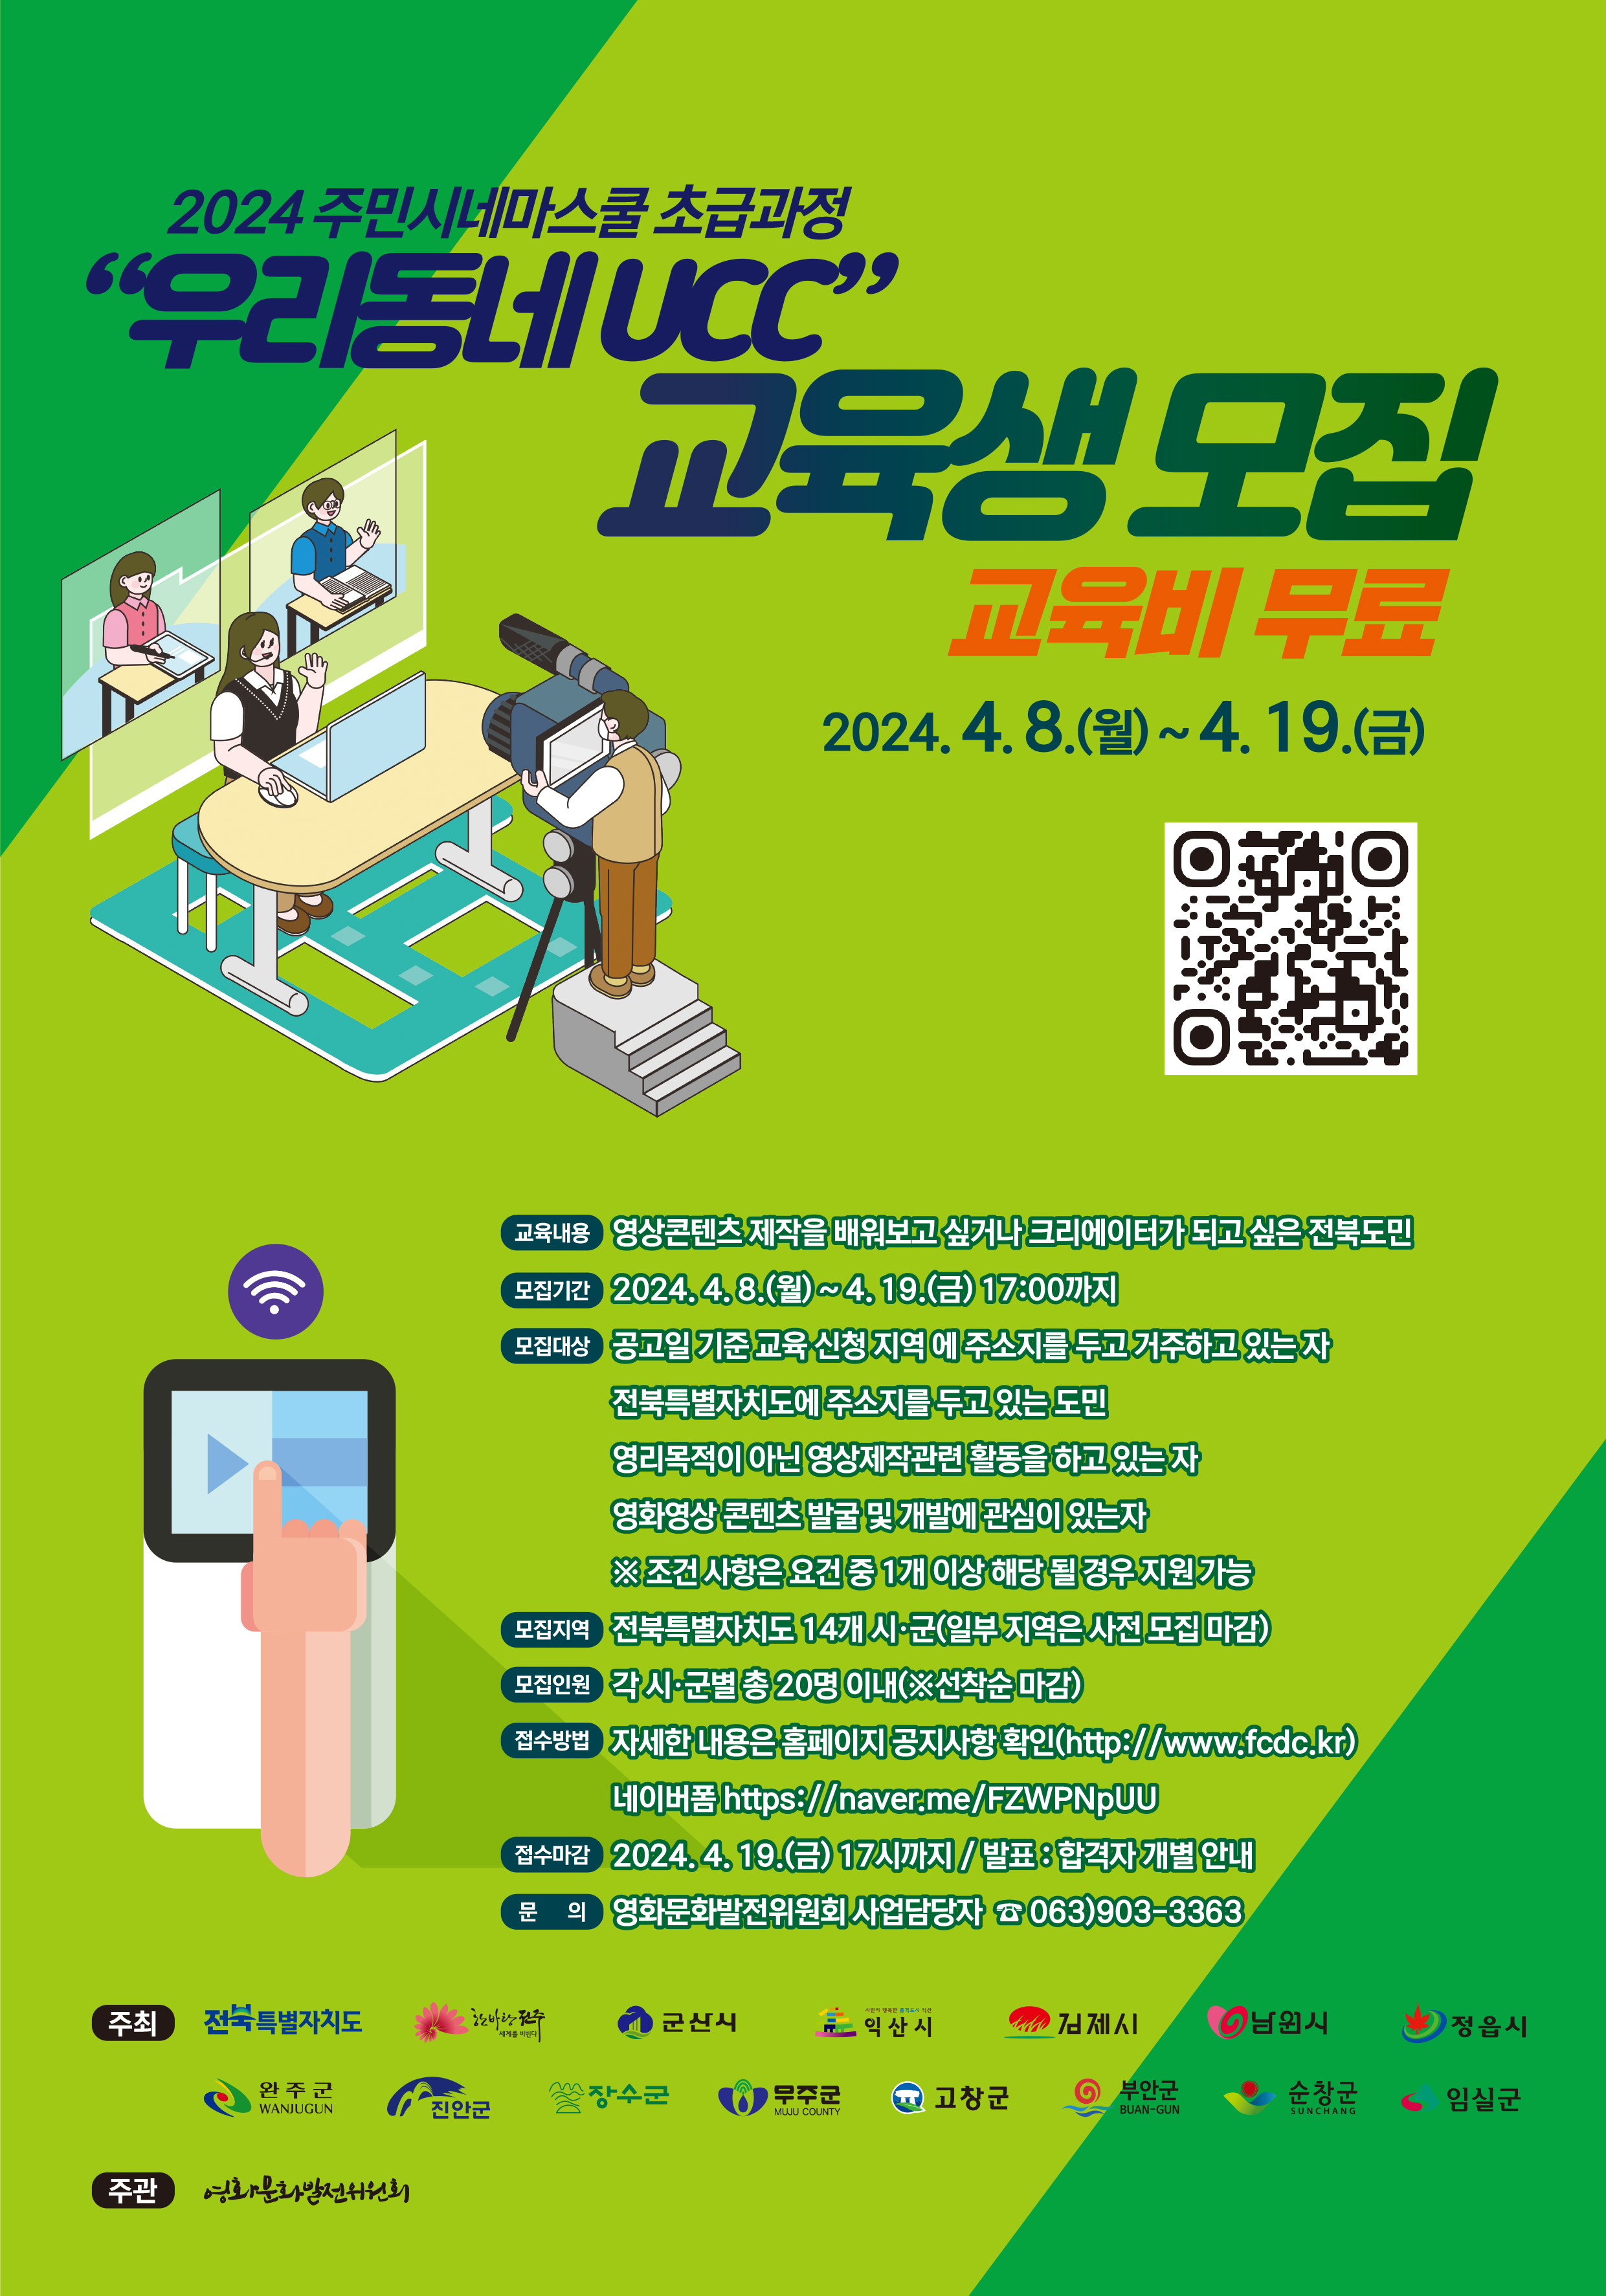 「2024 주민시네마스쿨 초급과정(우리동네UCC) 교육생 모집」홍보 사진